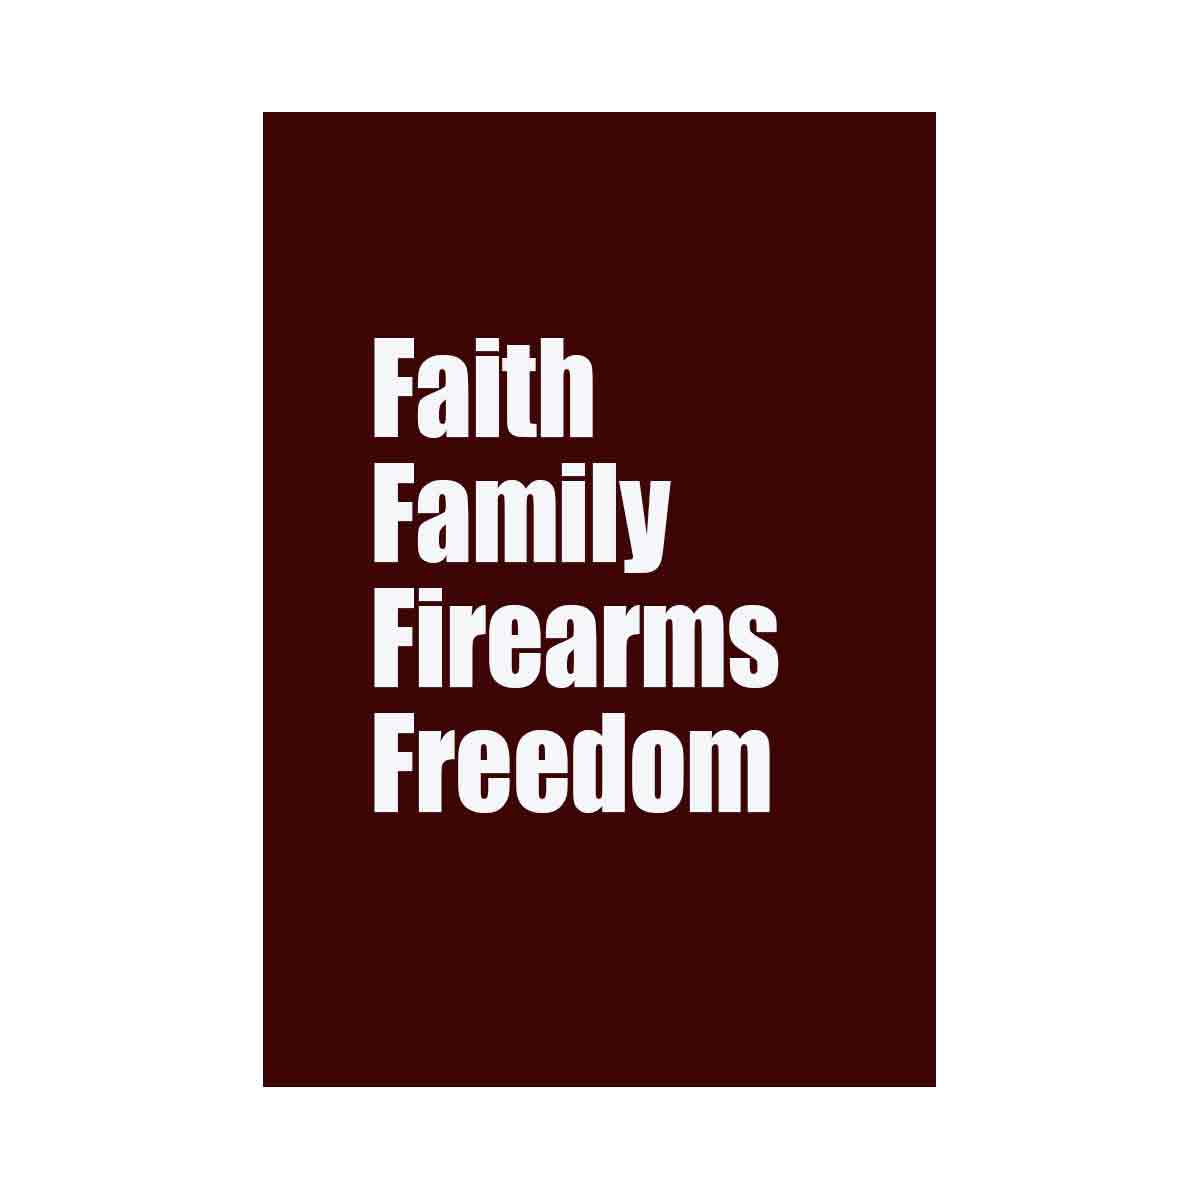 Faith Family Fireams Freedom